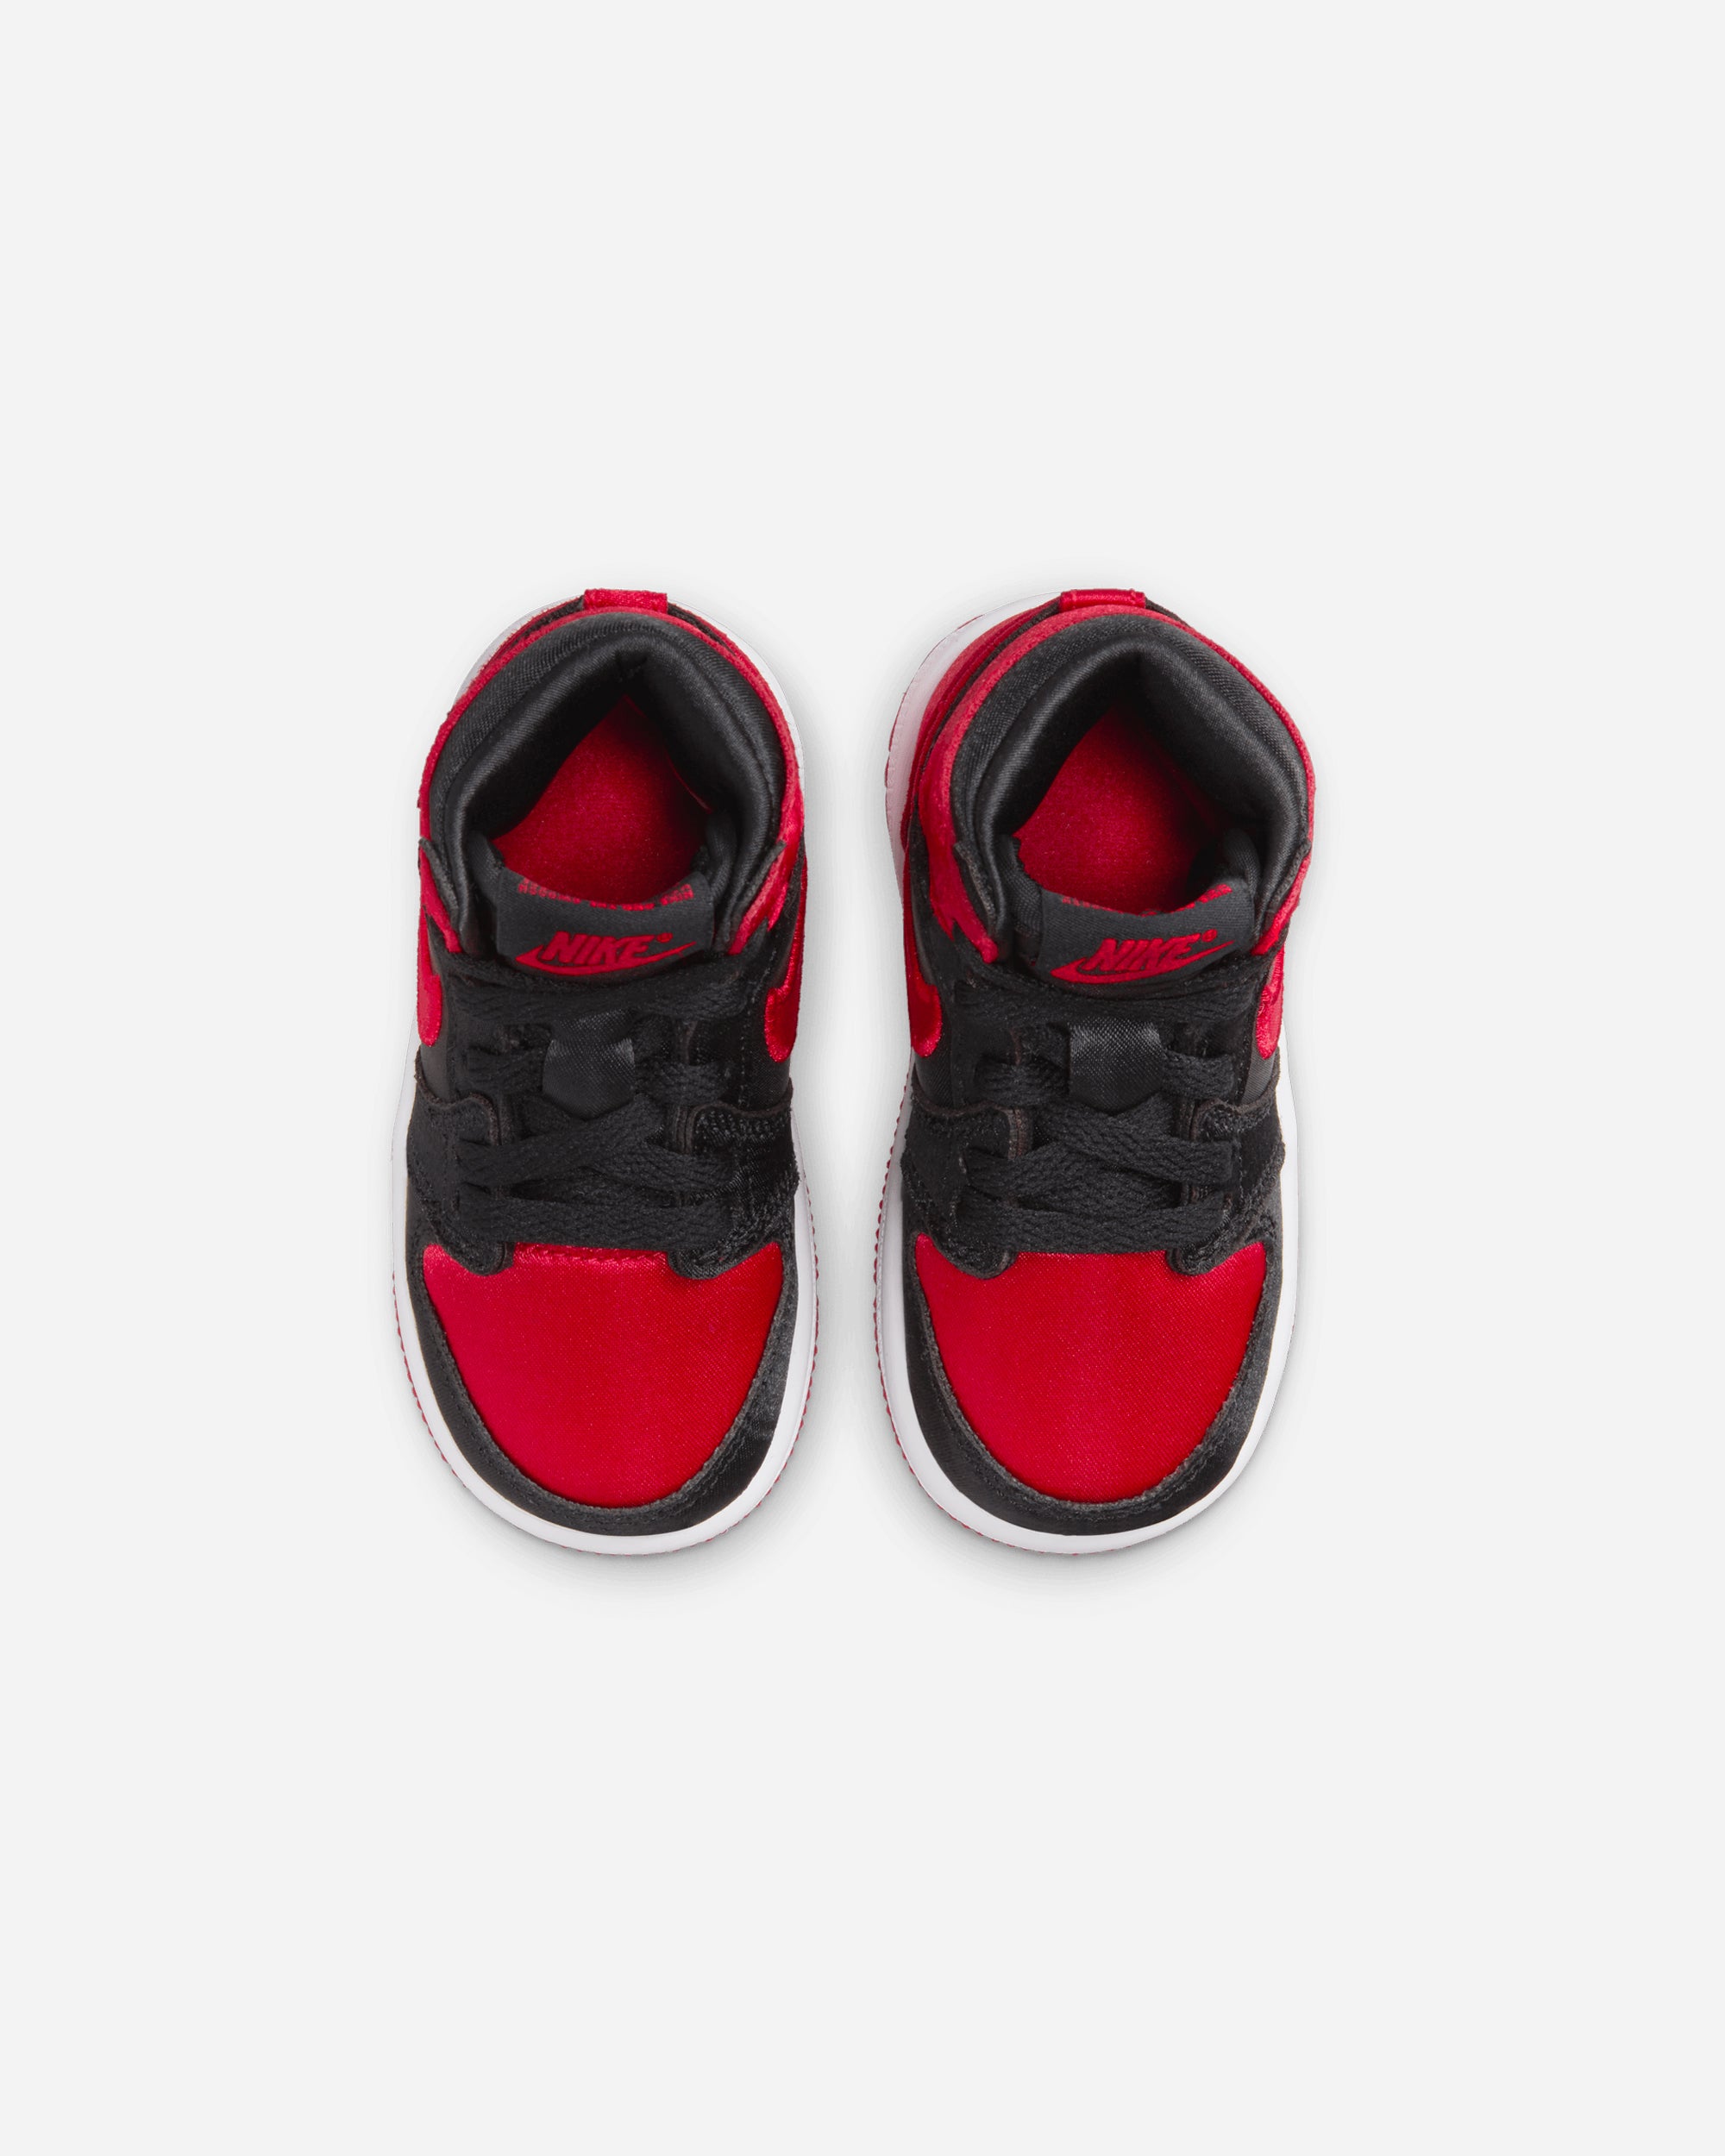 Jordan Brand Jordan 1 Retro High OG 'Satin Bred' (Toddler) BLACK/UNIVERSITY RED-WHITE FD5305-061